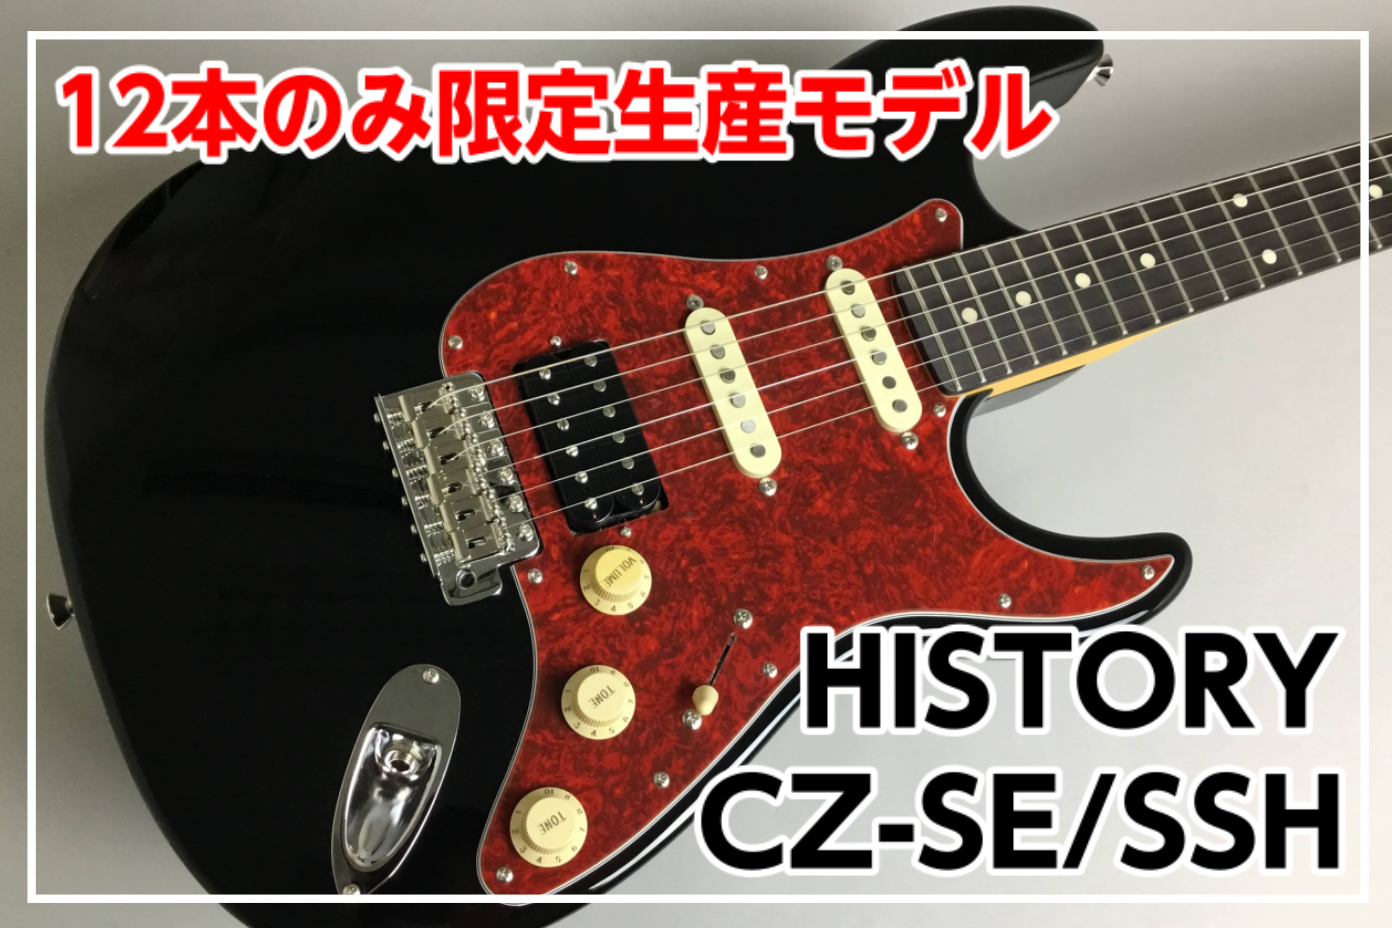 【限定生産モデル】History CZ-SE/SSH BLACK 展示中!! (11/14販売開始！)